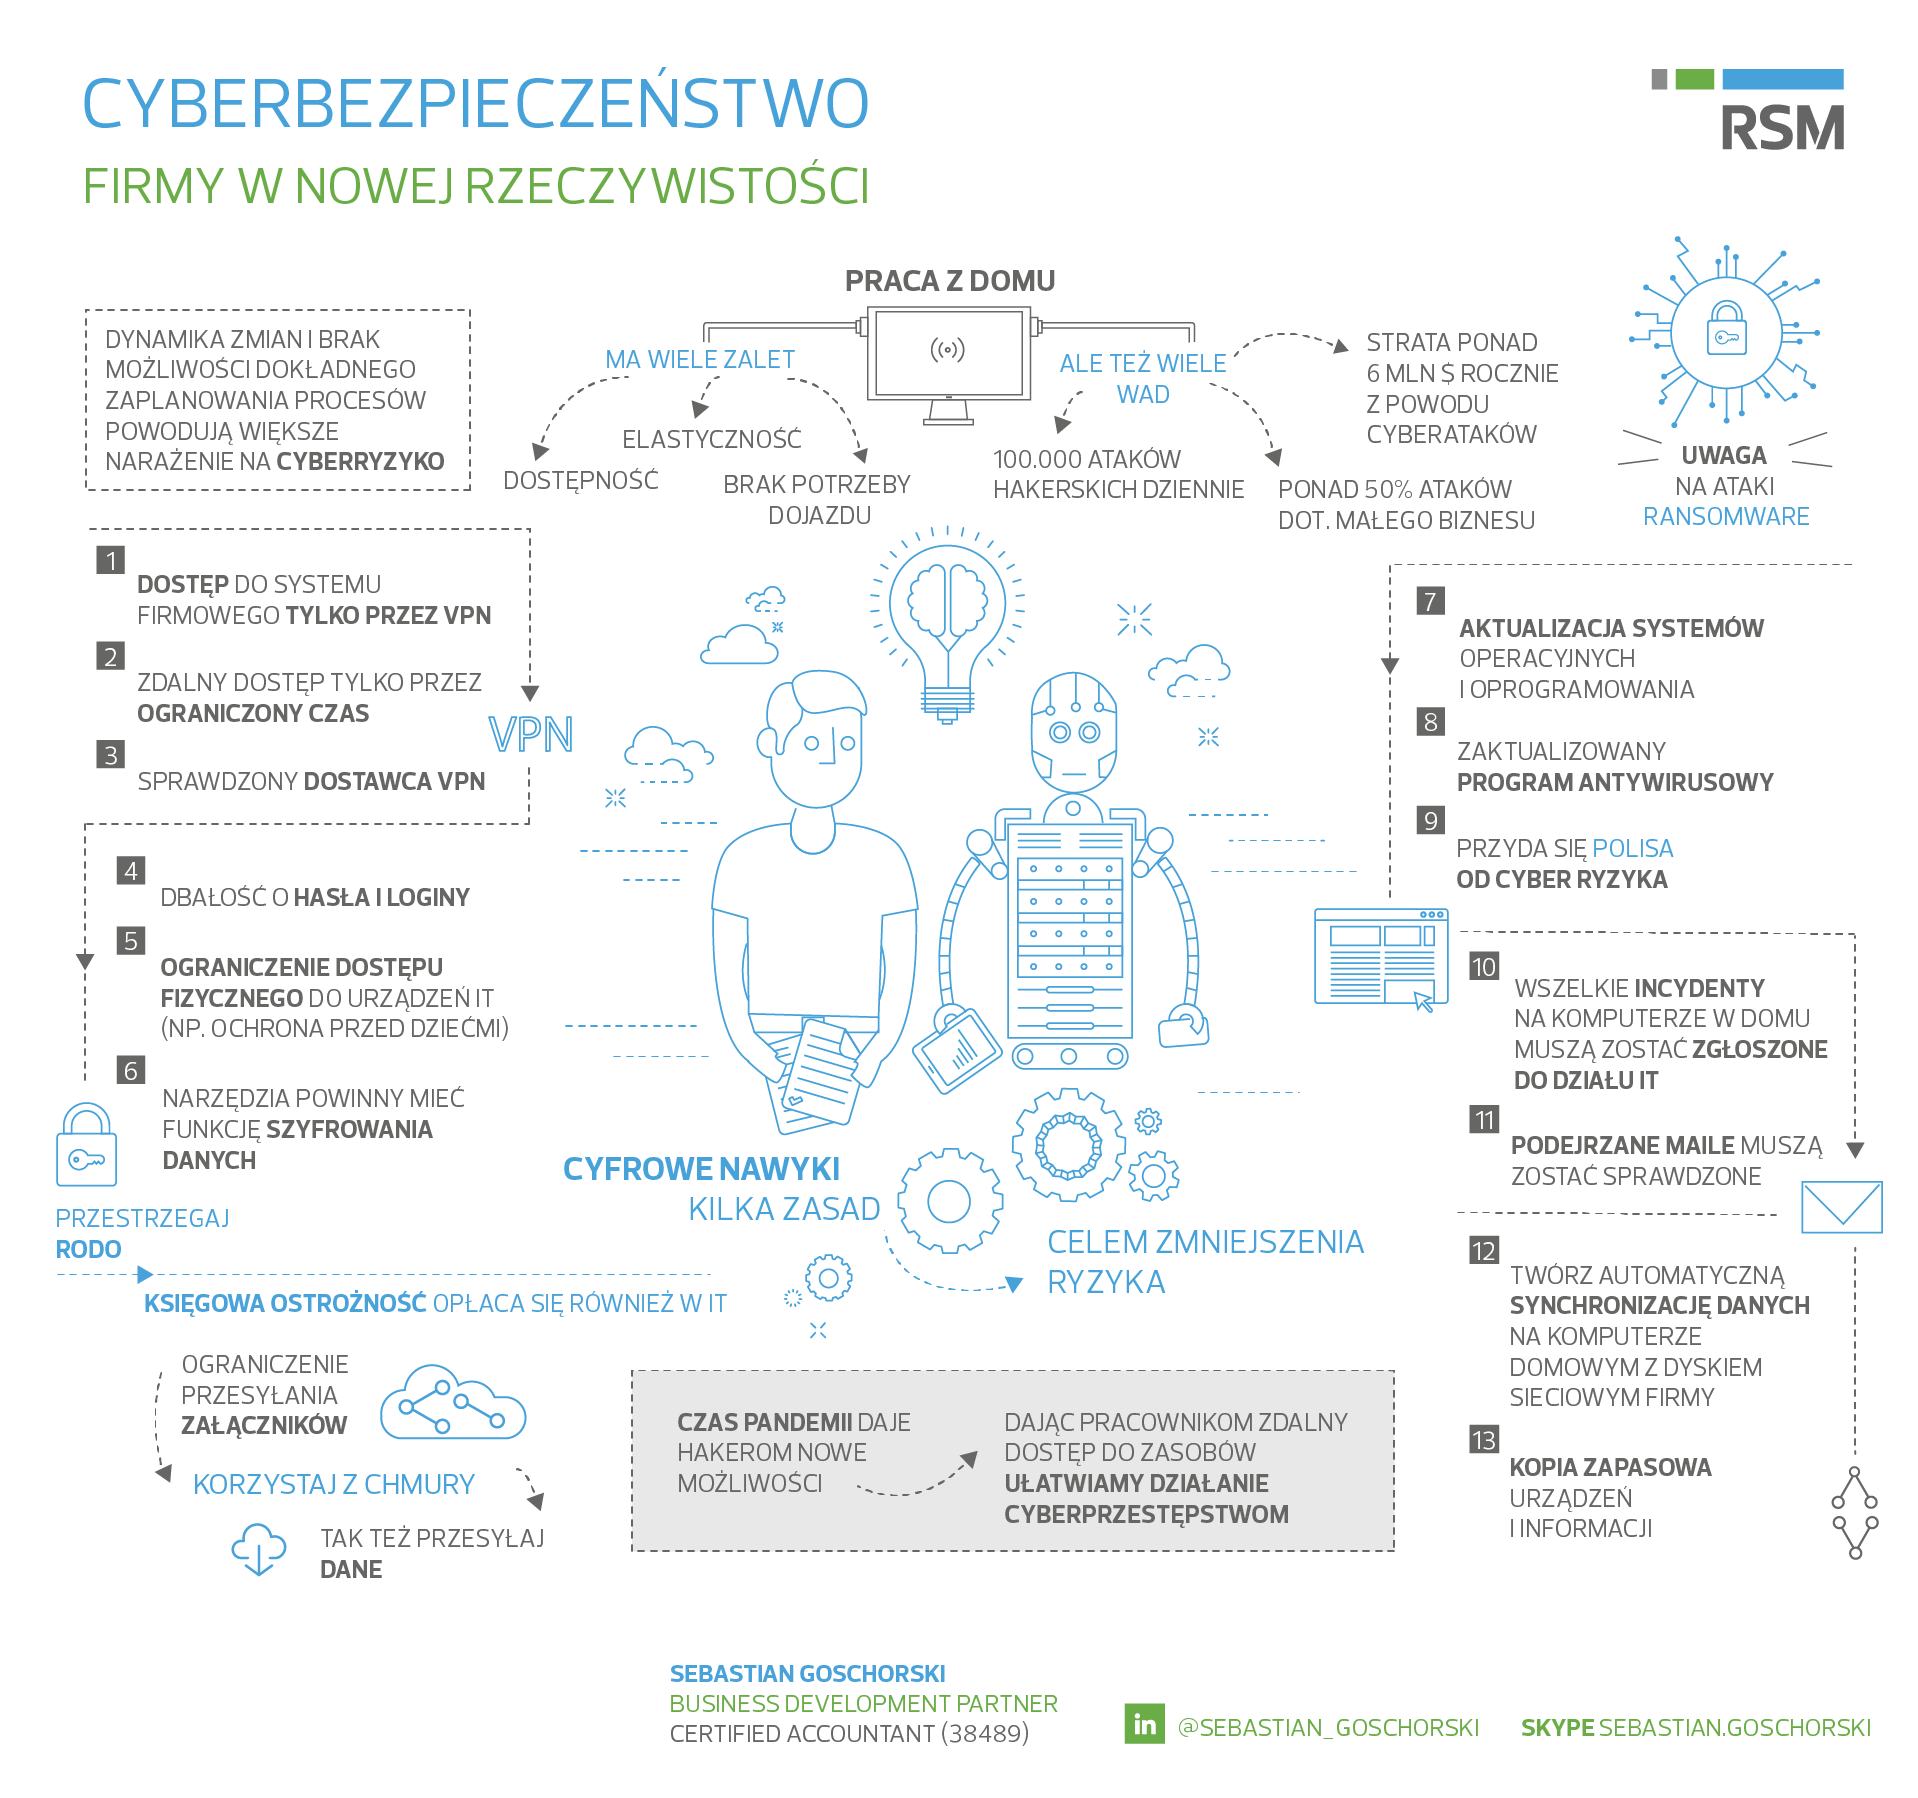 cyberbezpieczenstwo_pl.png